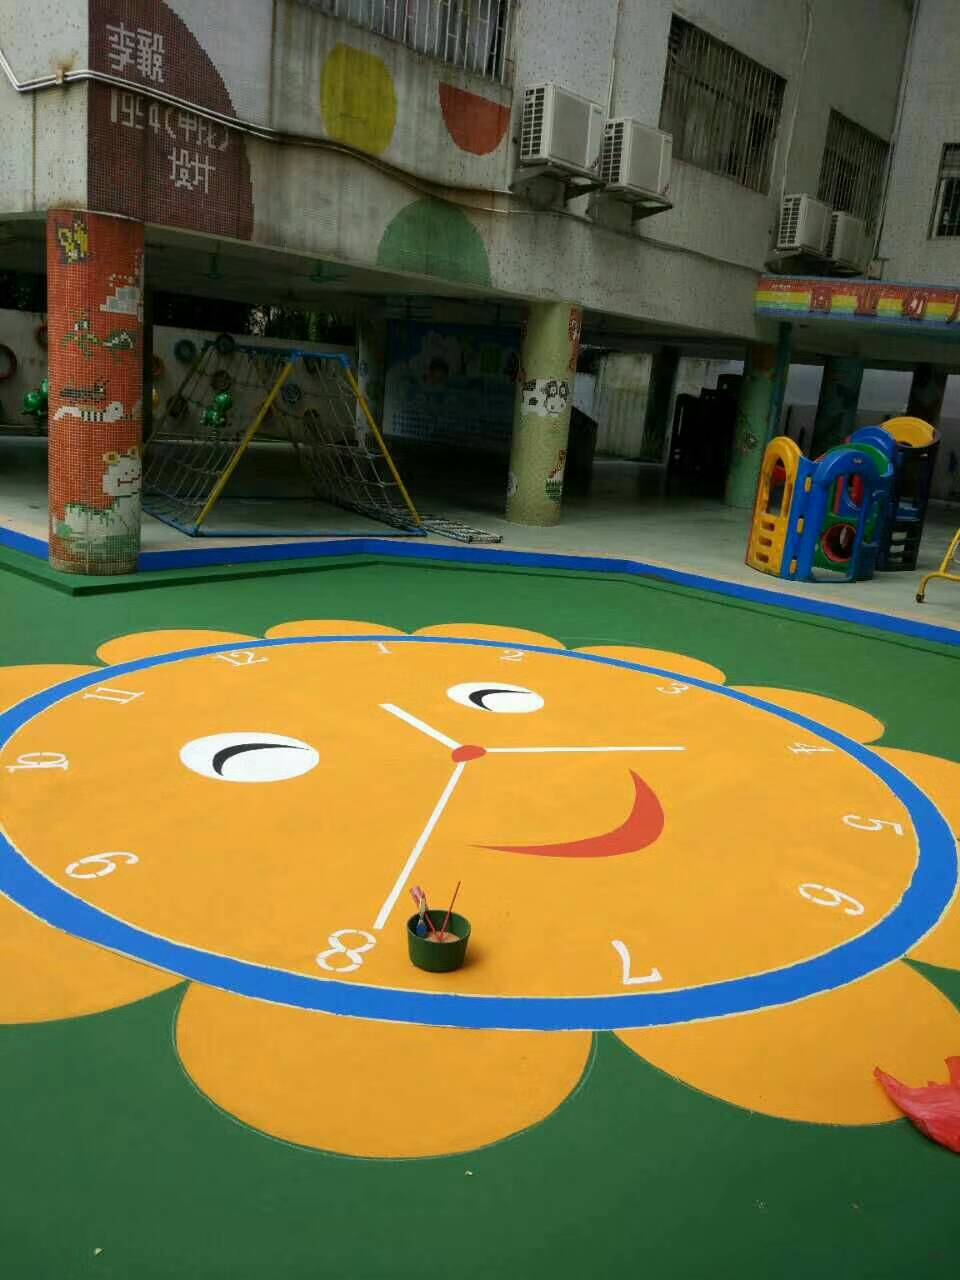 石岐区童乐幼儿园于暑期对室外操场游戏地面进行翻新施工,材料采用